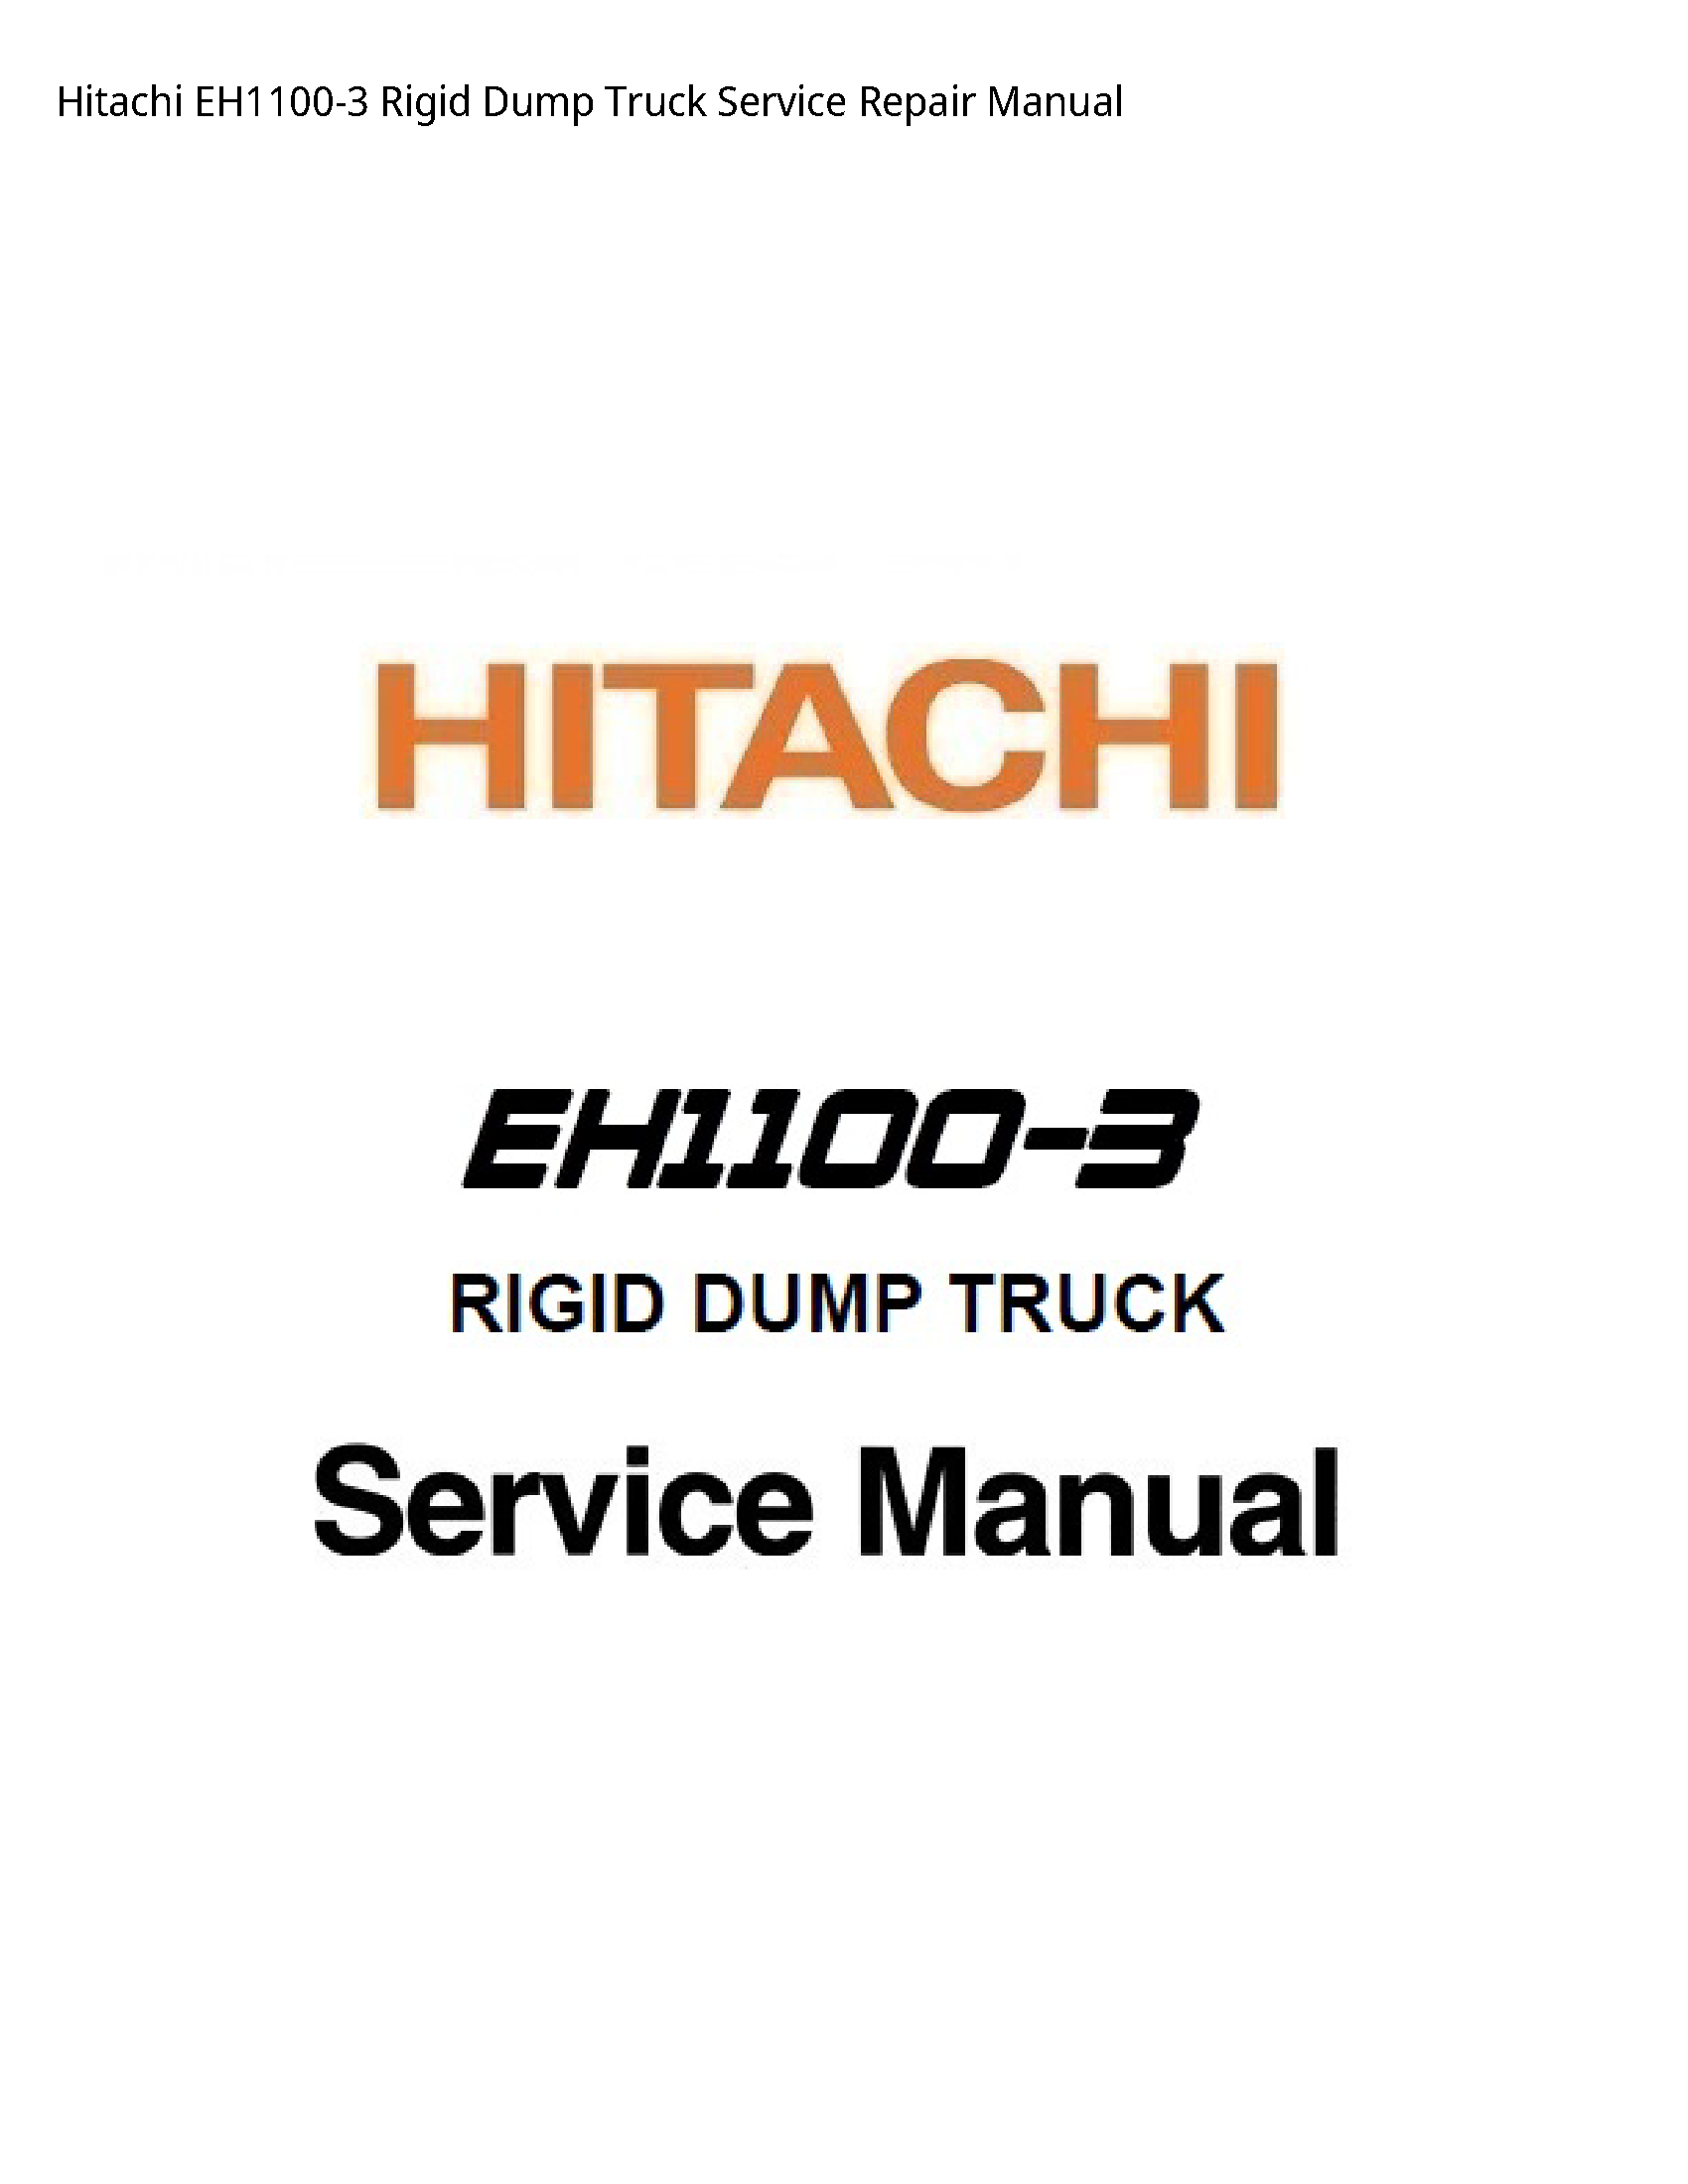 Hitachi EH1100-3 Rigid Dump Truck manual